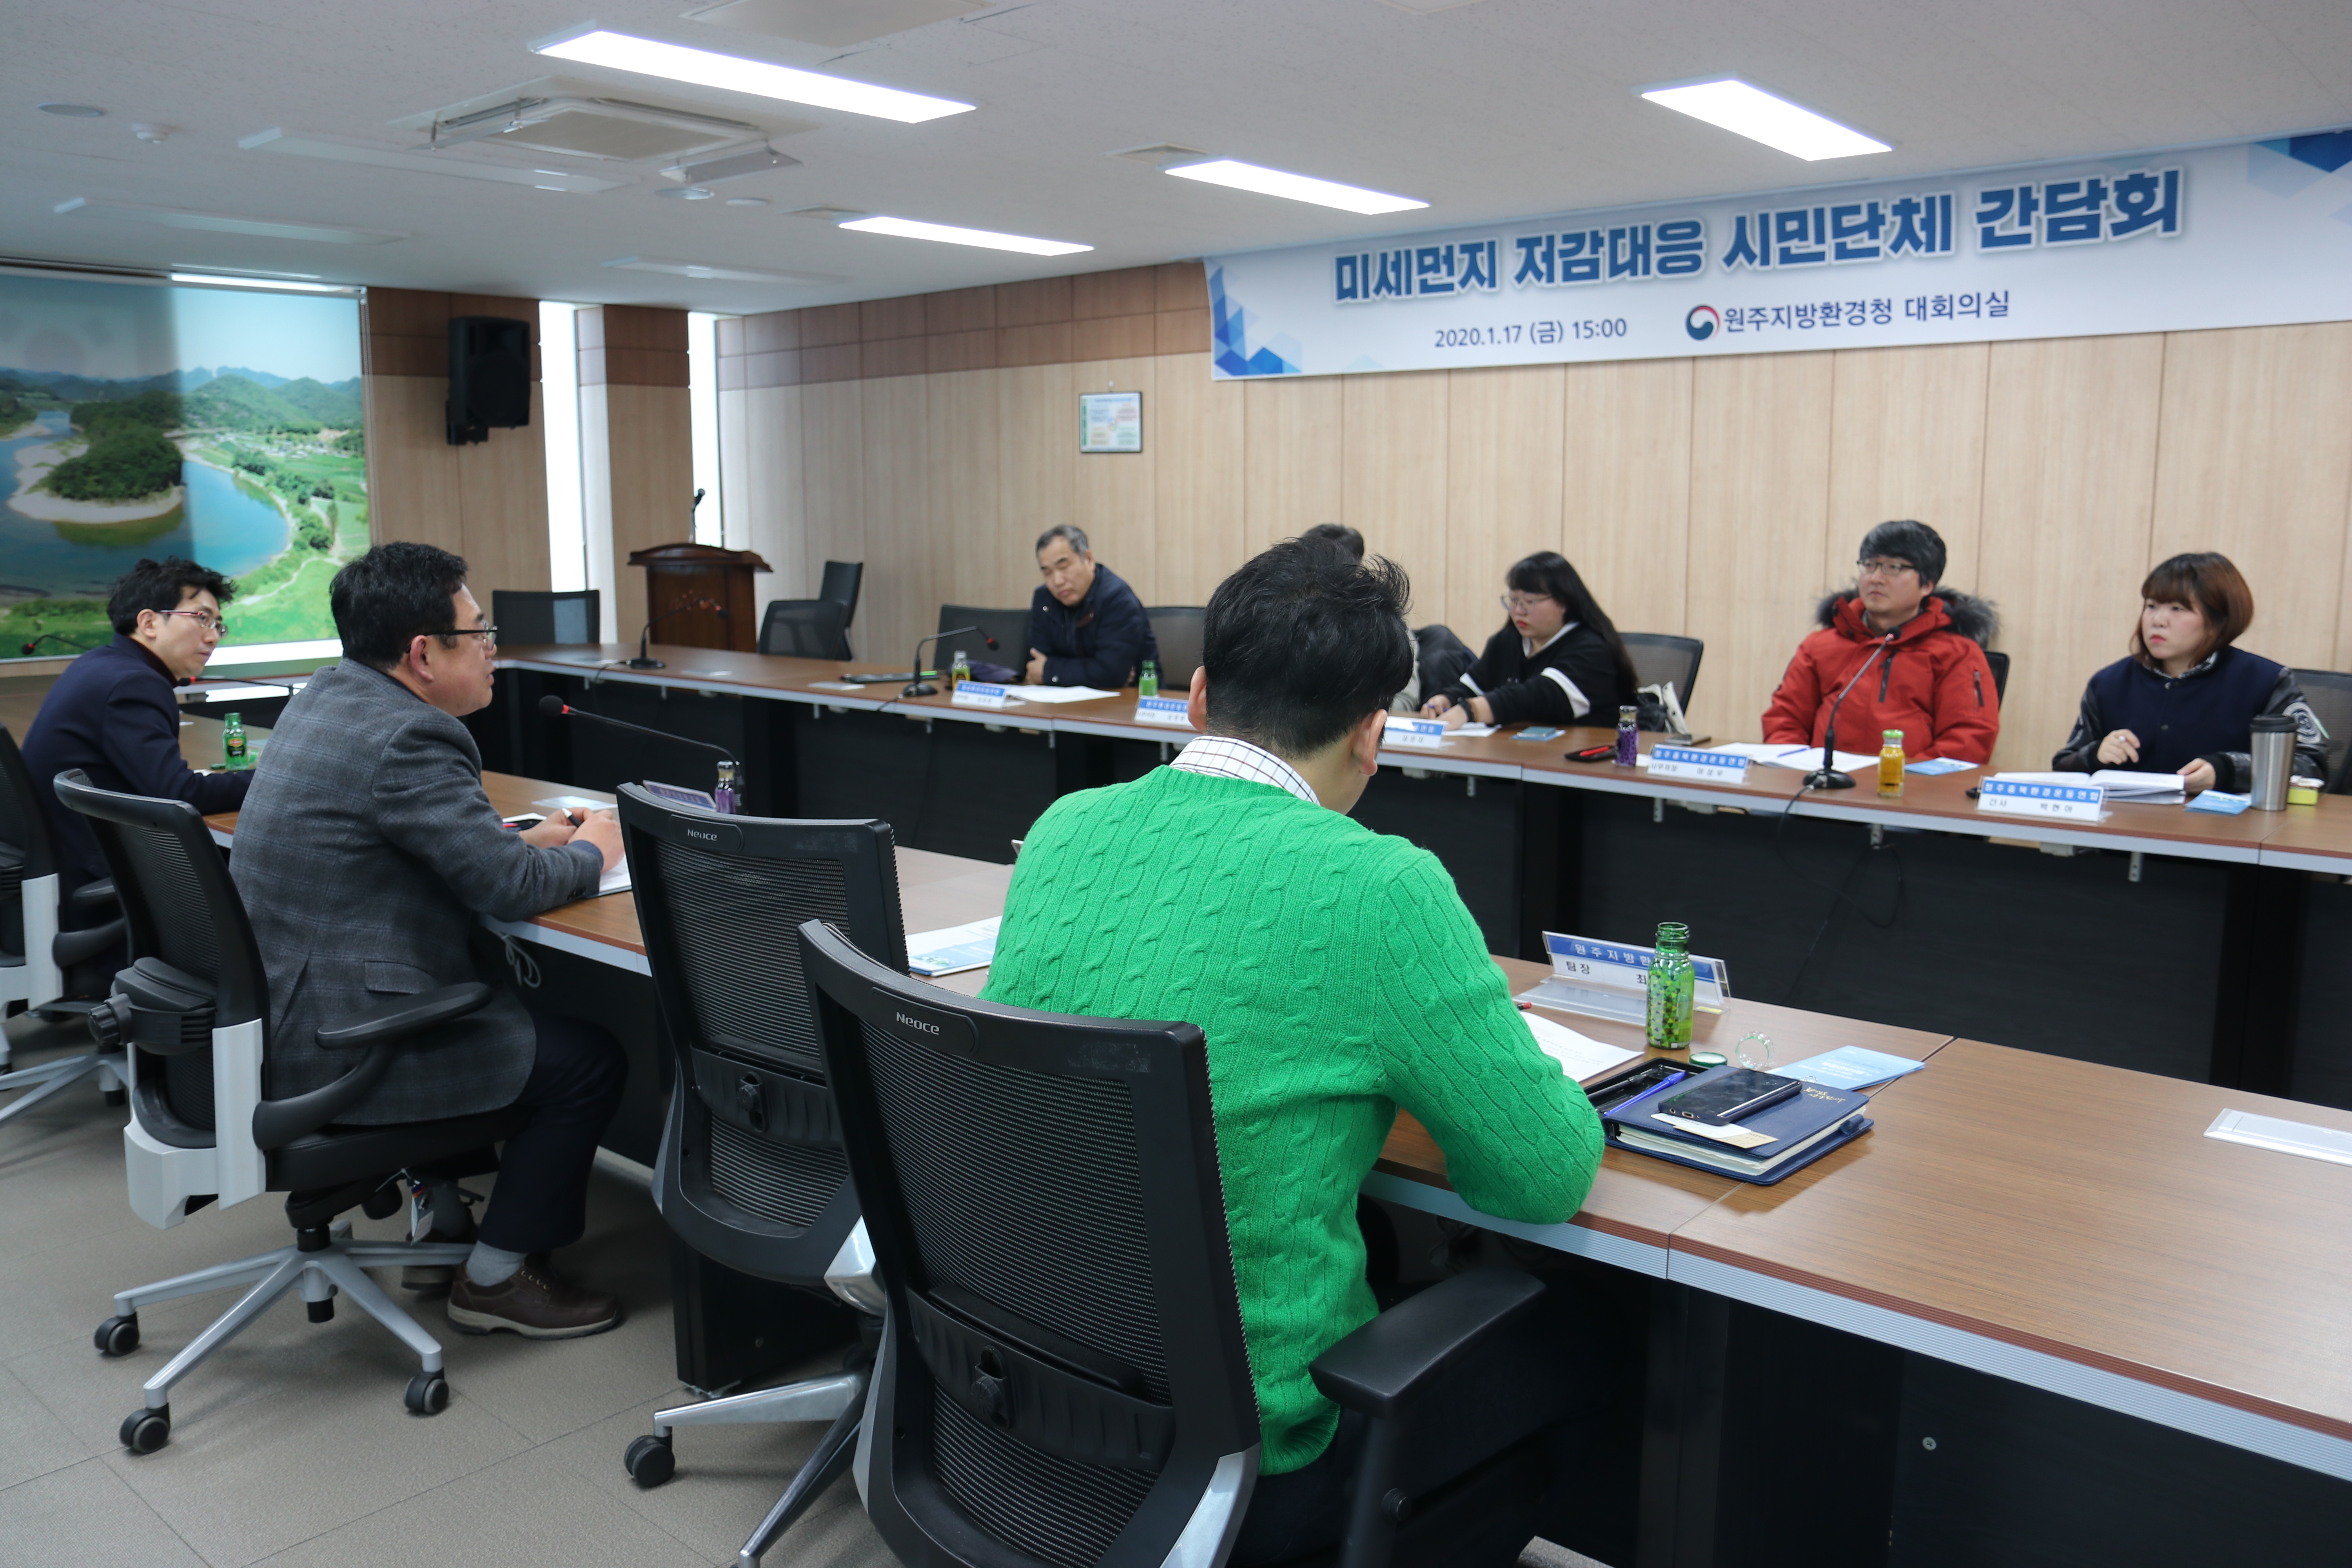 환경운동연합과 미세먼지 대응 간담회 개최